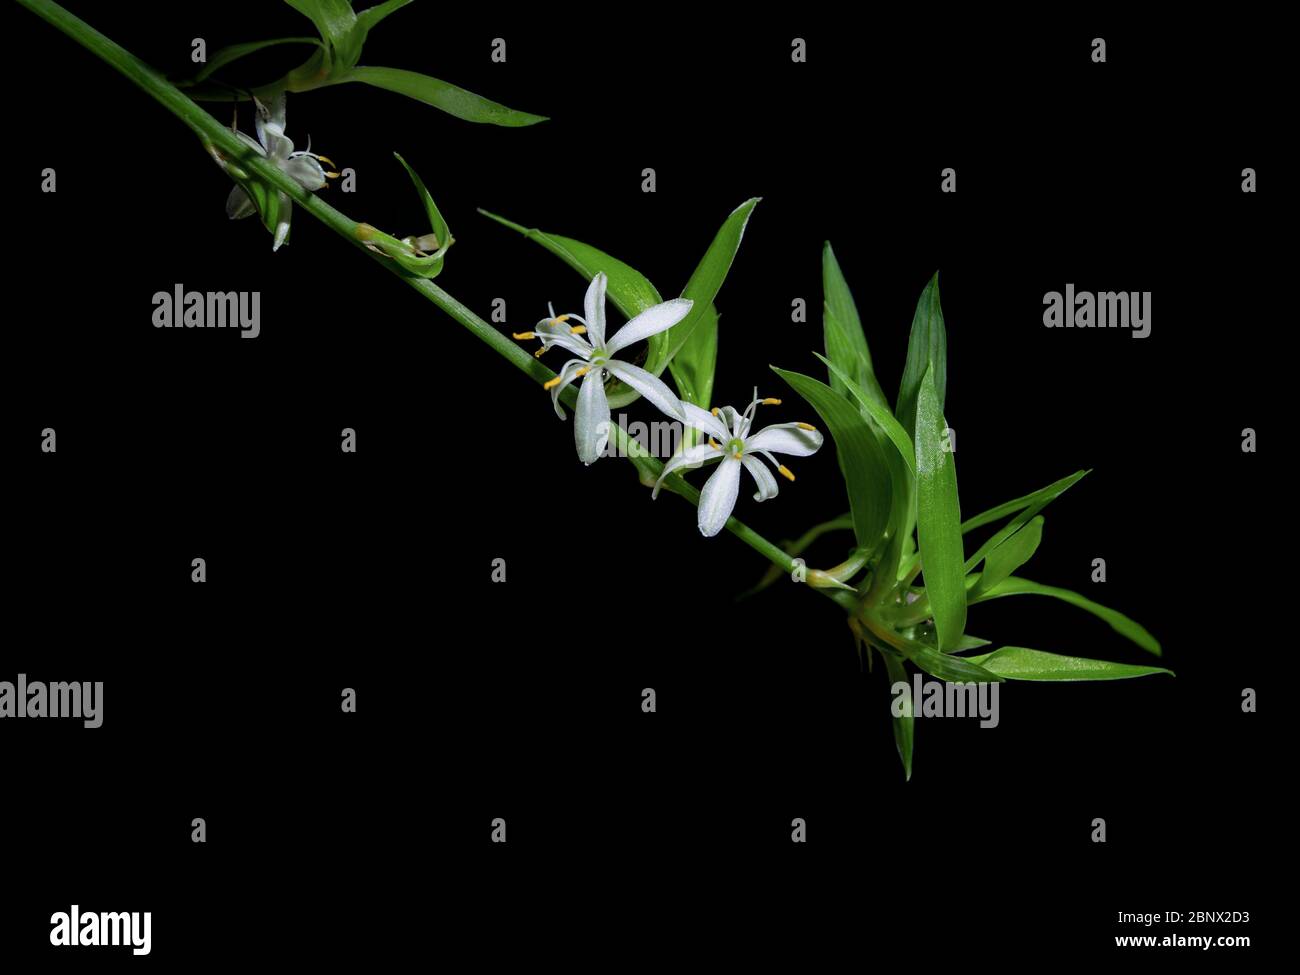 Deux fleurs de chlorophytum comosum blanc dans une longue inflorescence ramifiée. Chaque fleur a six tepals à trois veinés. Tout sur fond noir Banque D'Images